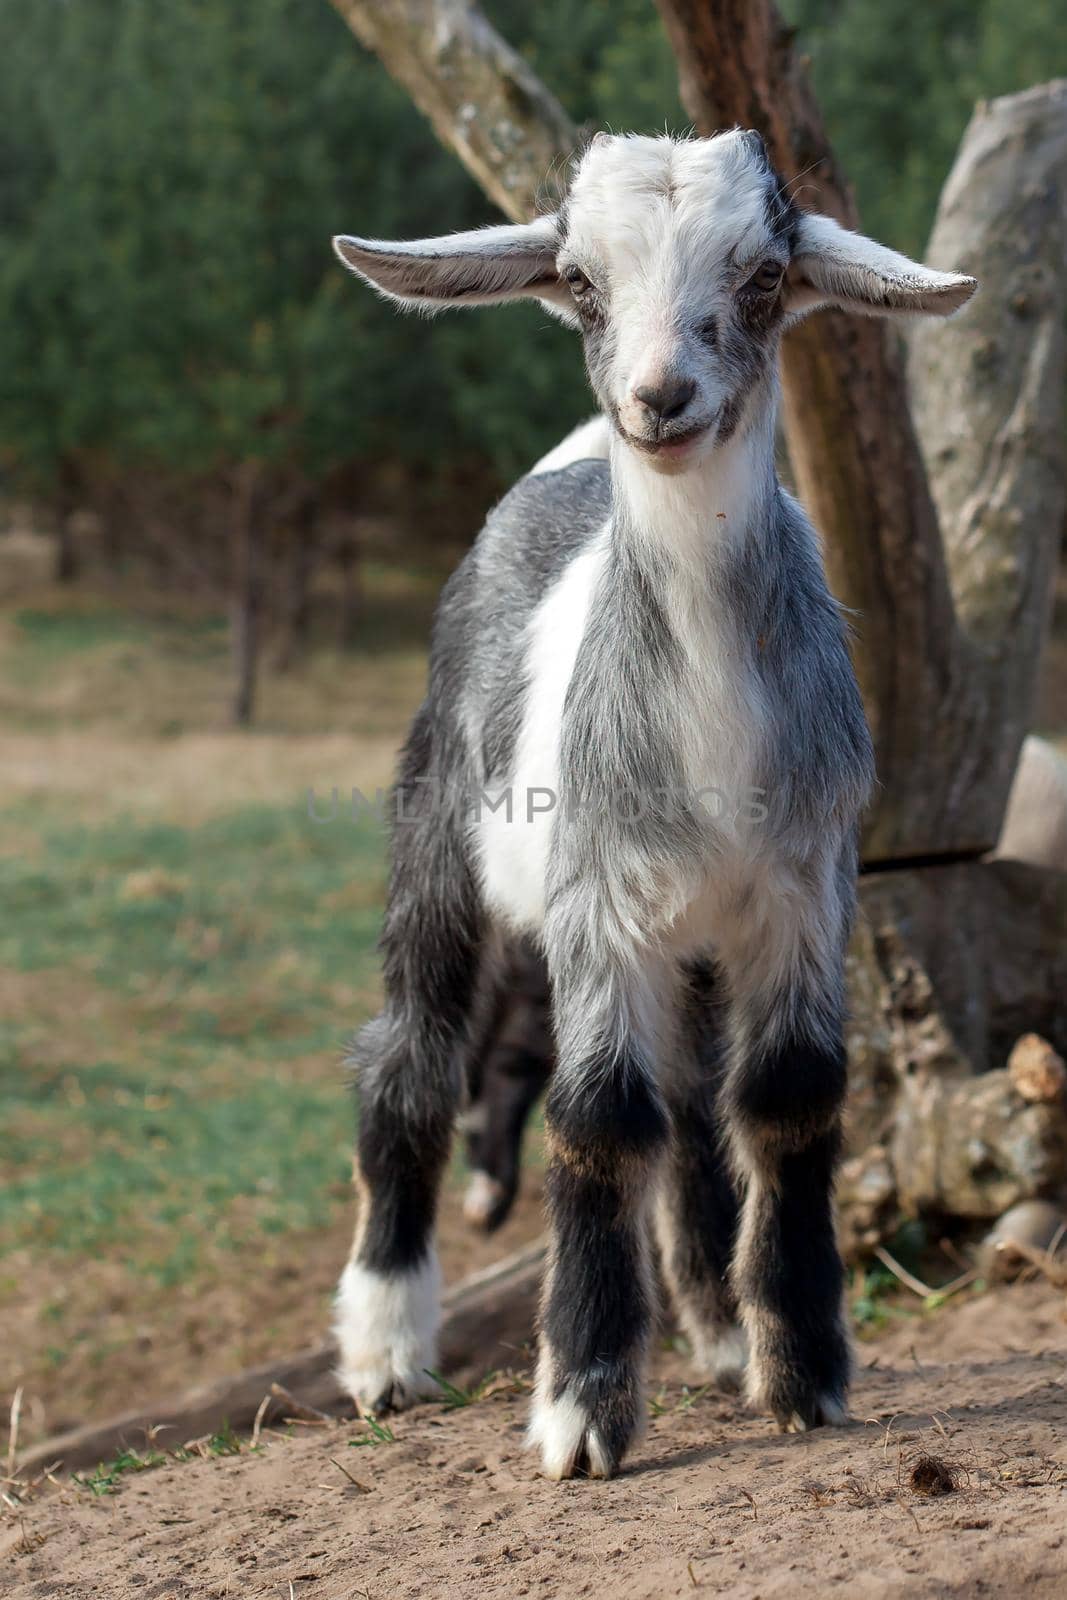 Little goat smile by Lincikas